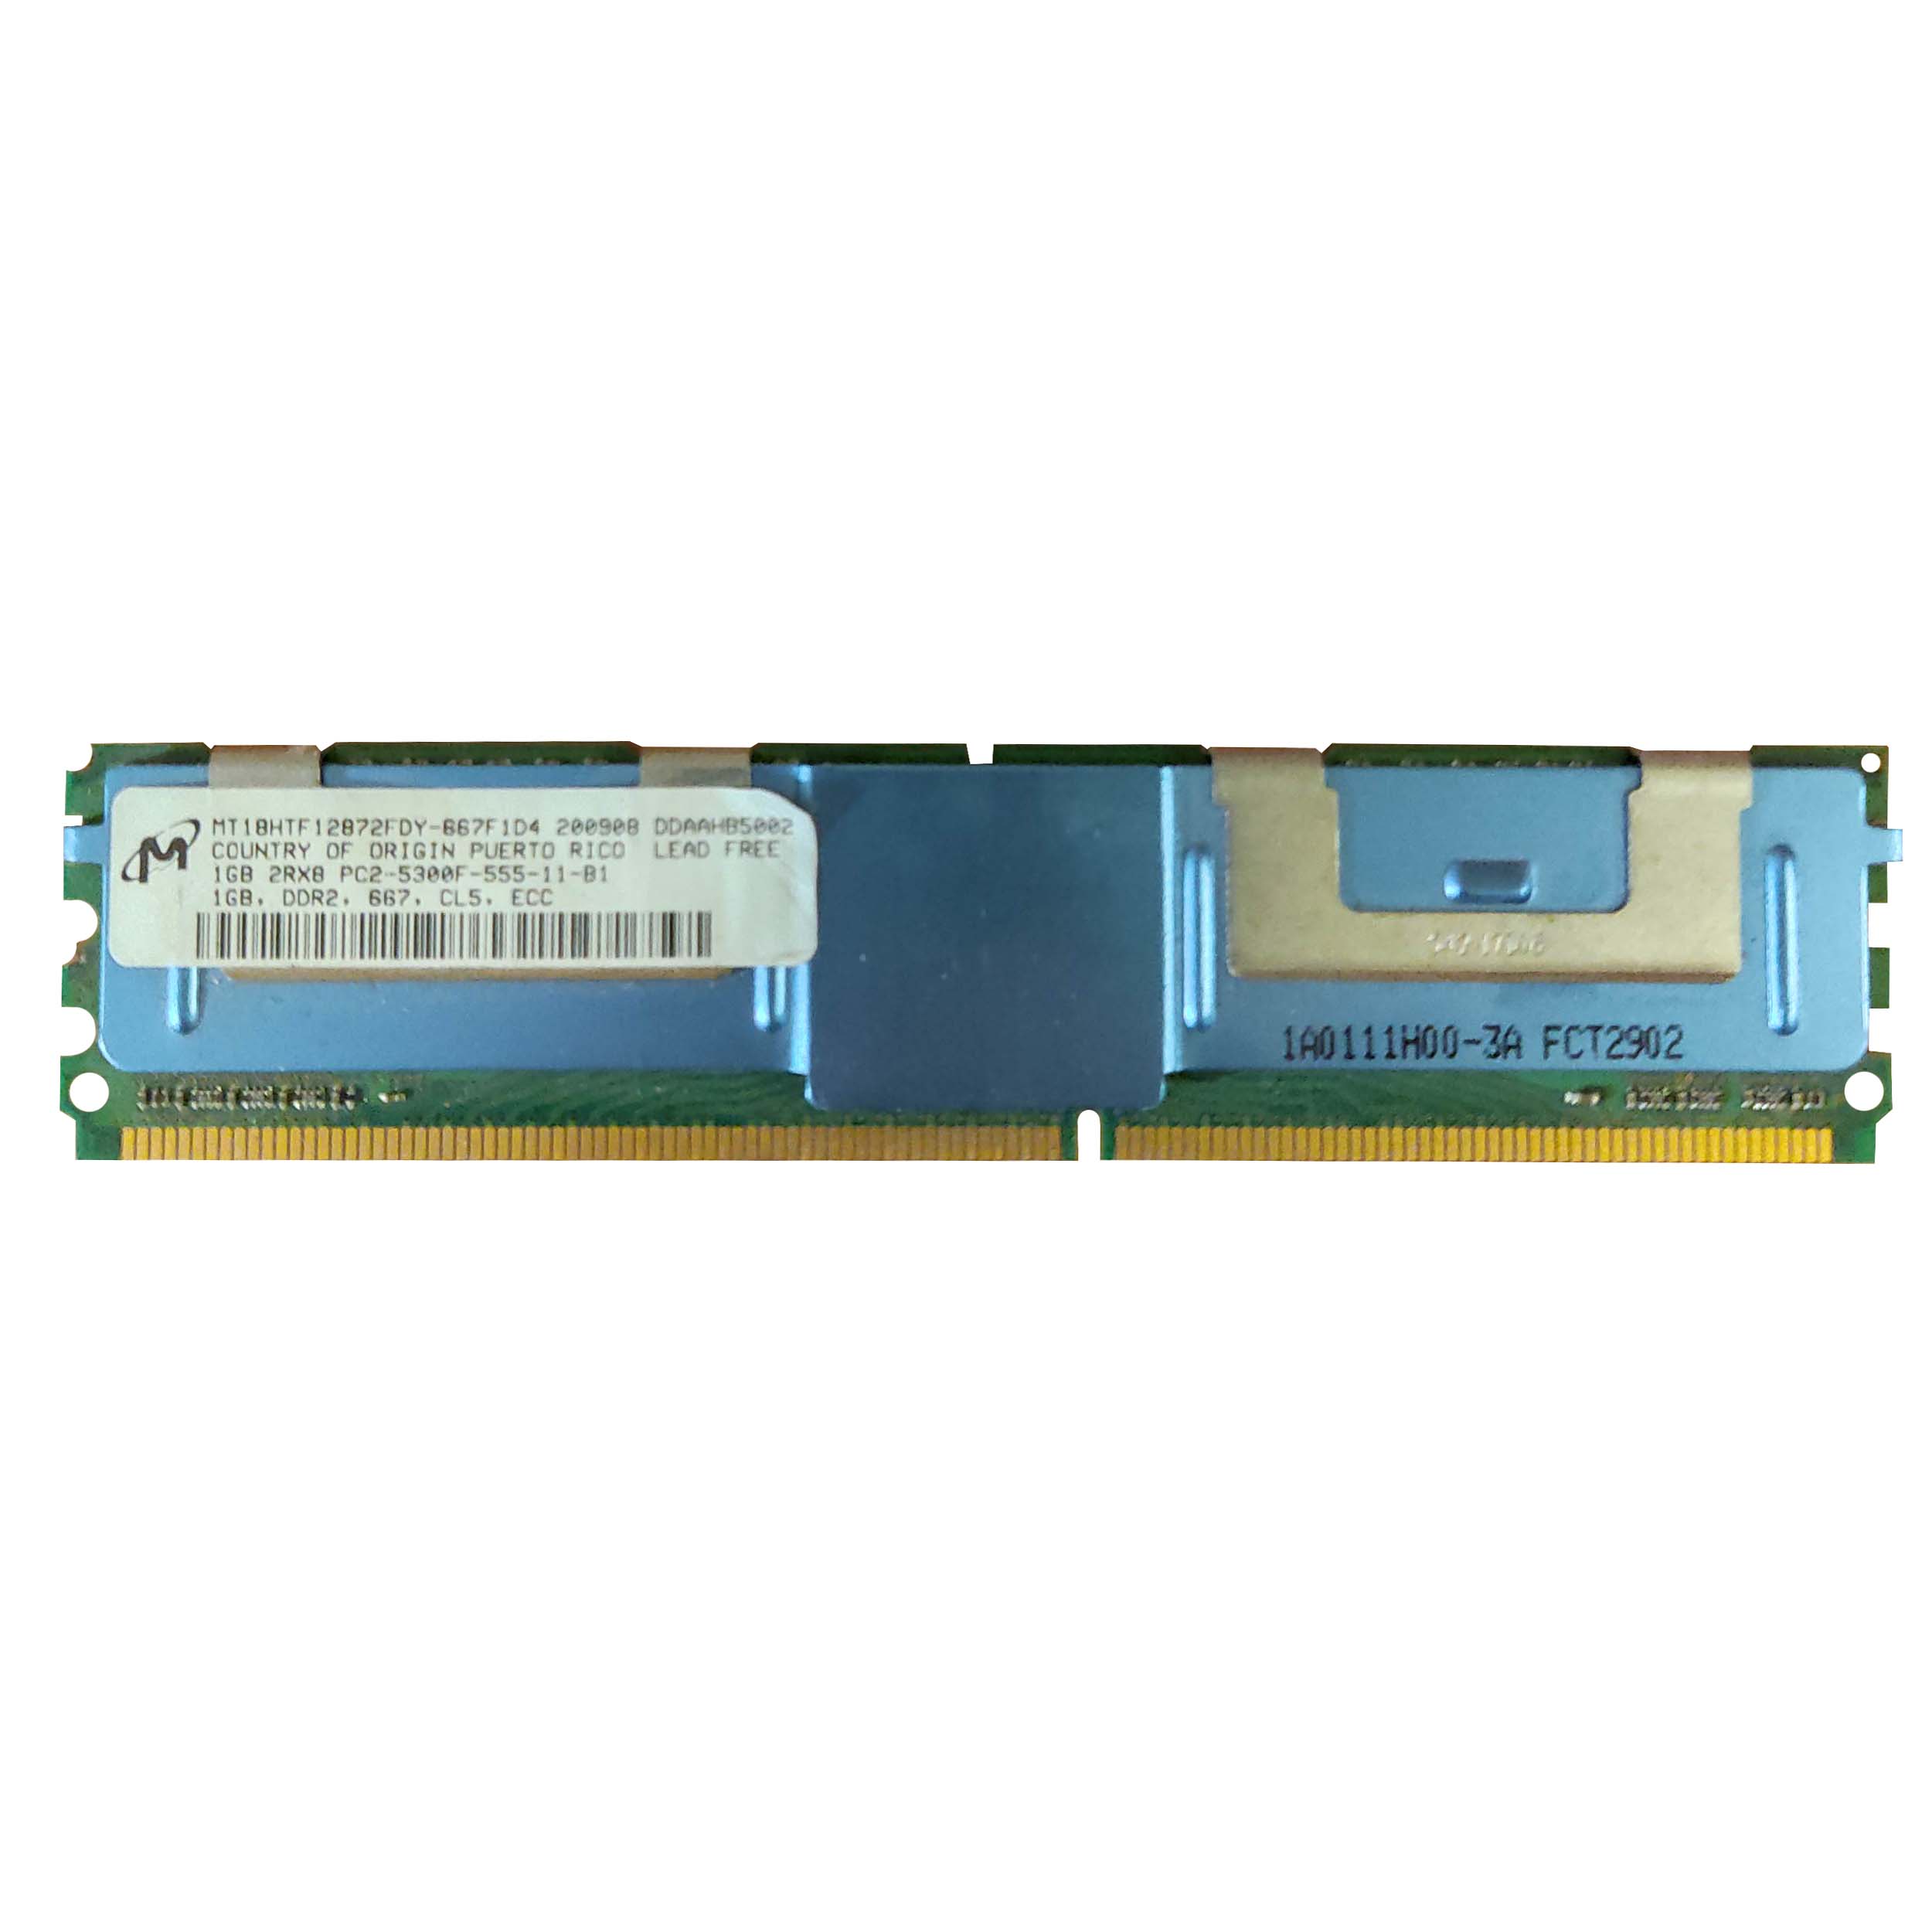 رم سرور DDR2 تک کاناله 5300F مگاهرتز CL5 اچ پی مدل DDAAHP5002 ظرفیت 1 گیگابایت